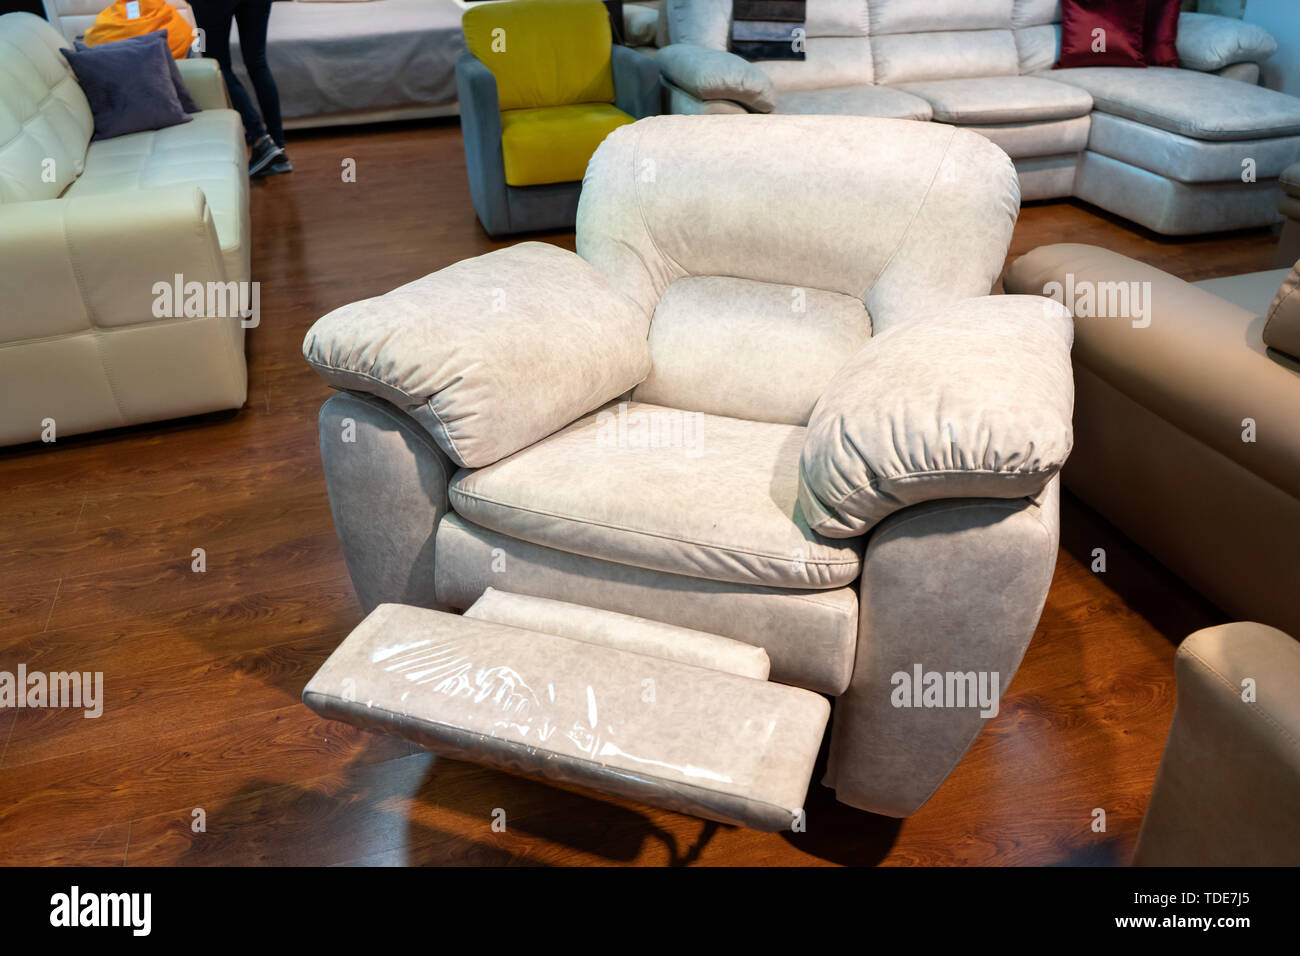 Nouvelle chaise en cuir dans le magasin. Canapés et chaises sont exposées dans le magasin de meubles. Vente Banque D'Images